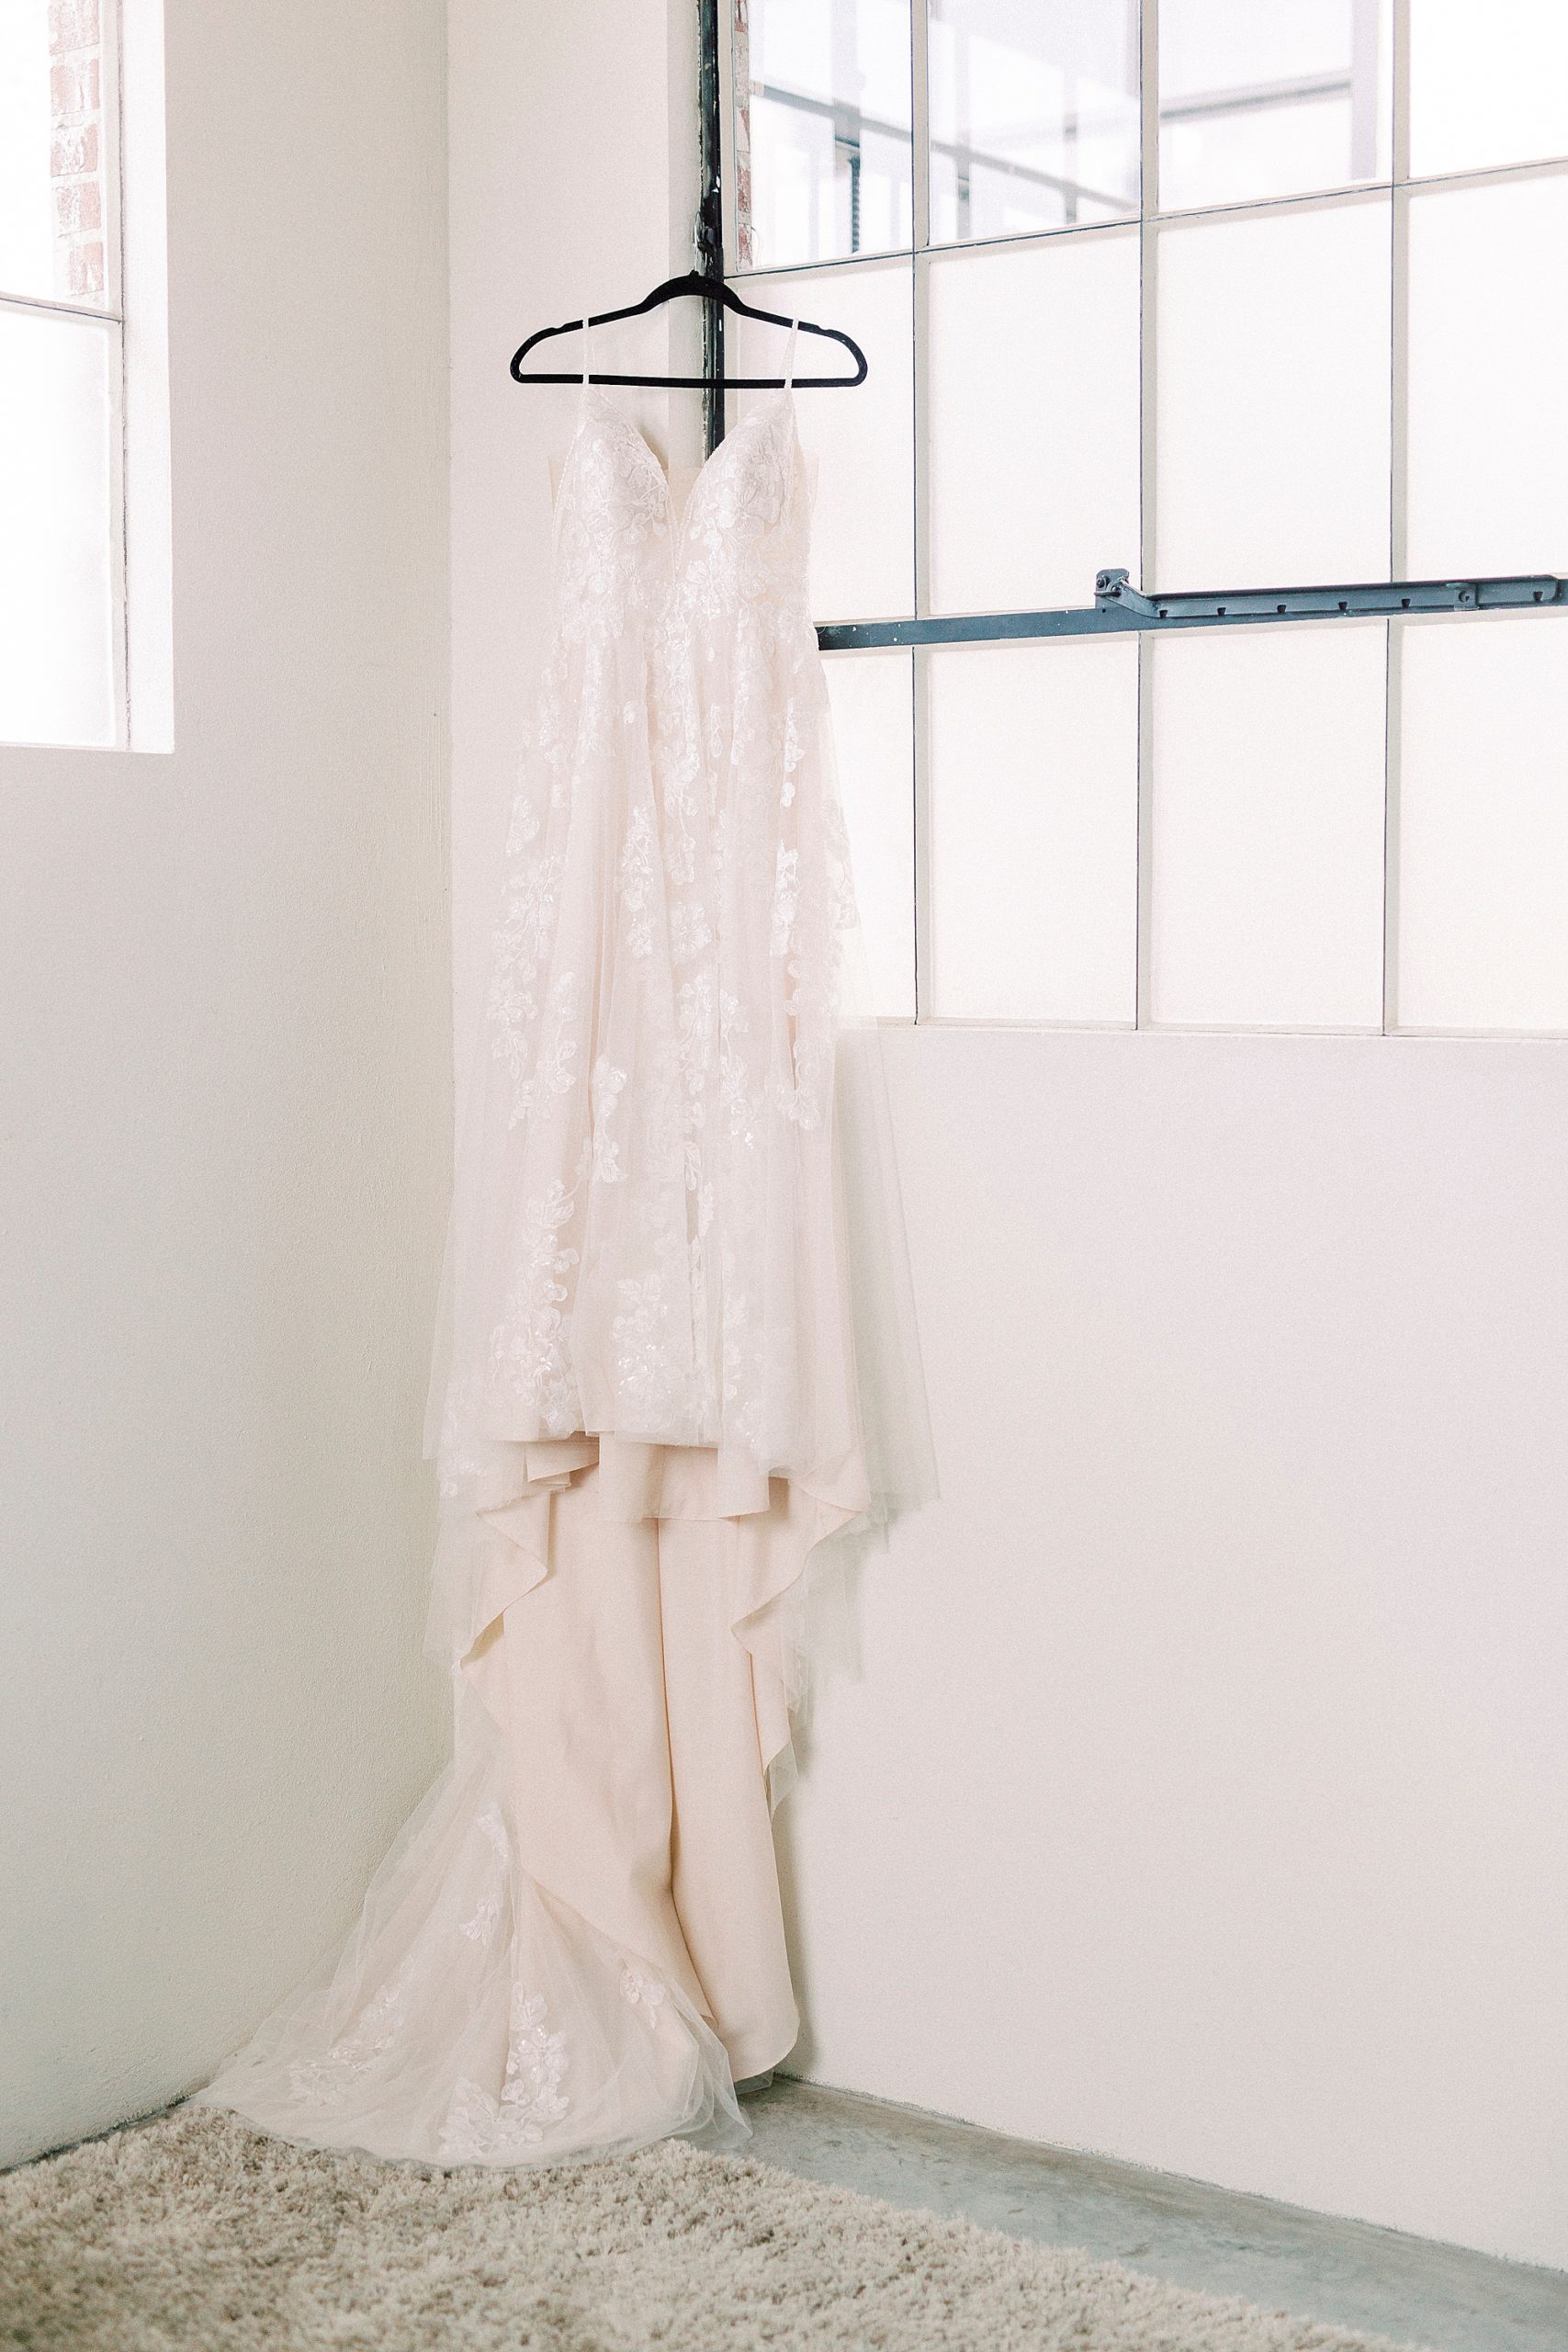 bride's dress hangs in Cadillac Service Garage